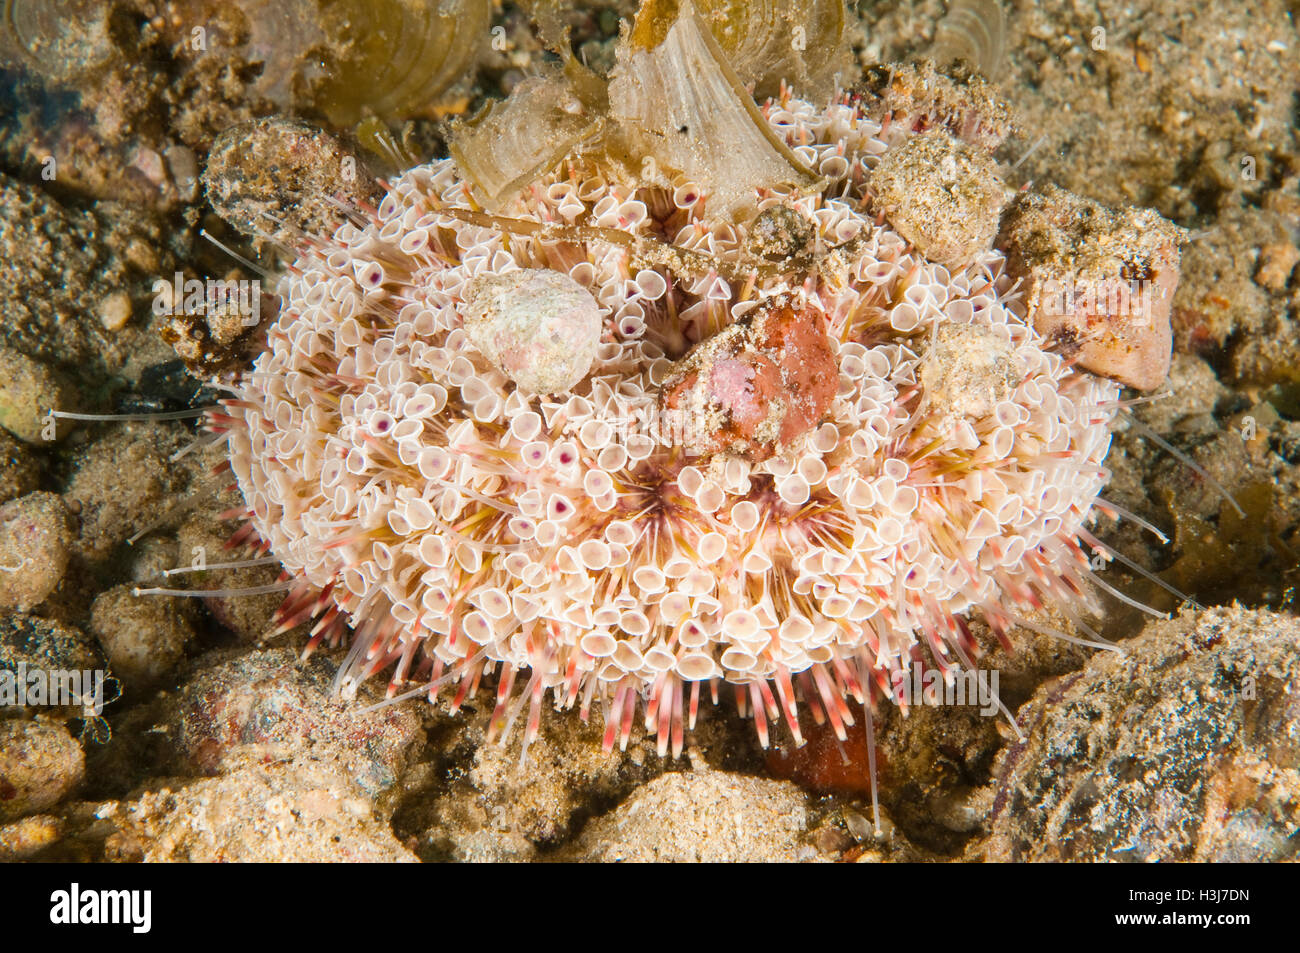 Toxic sea urchin (Toxopneustes pileolus), off Pasar Wajo, Buton Island, Indonesia Stock Photo